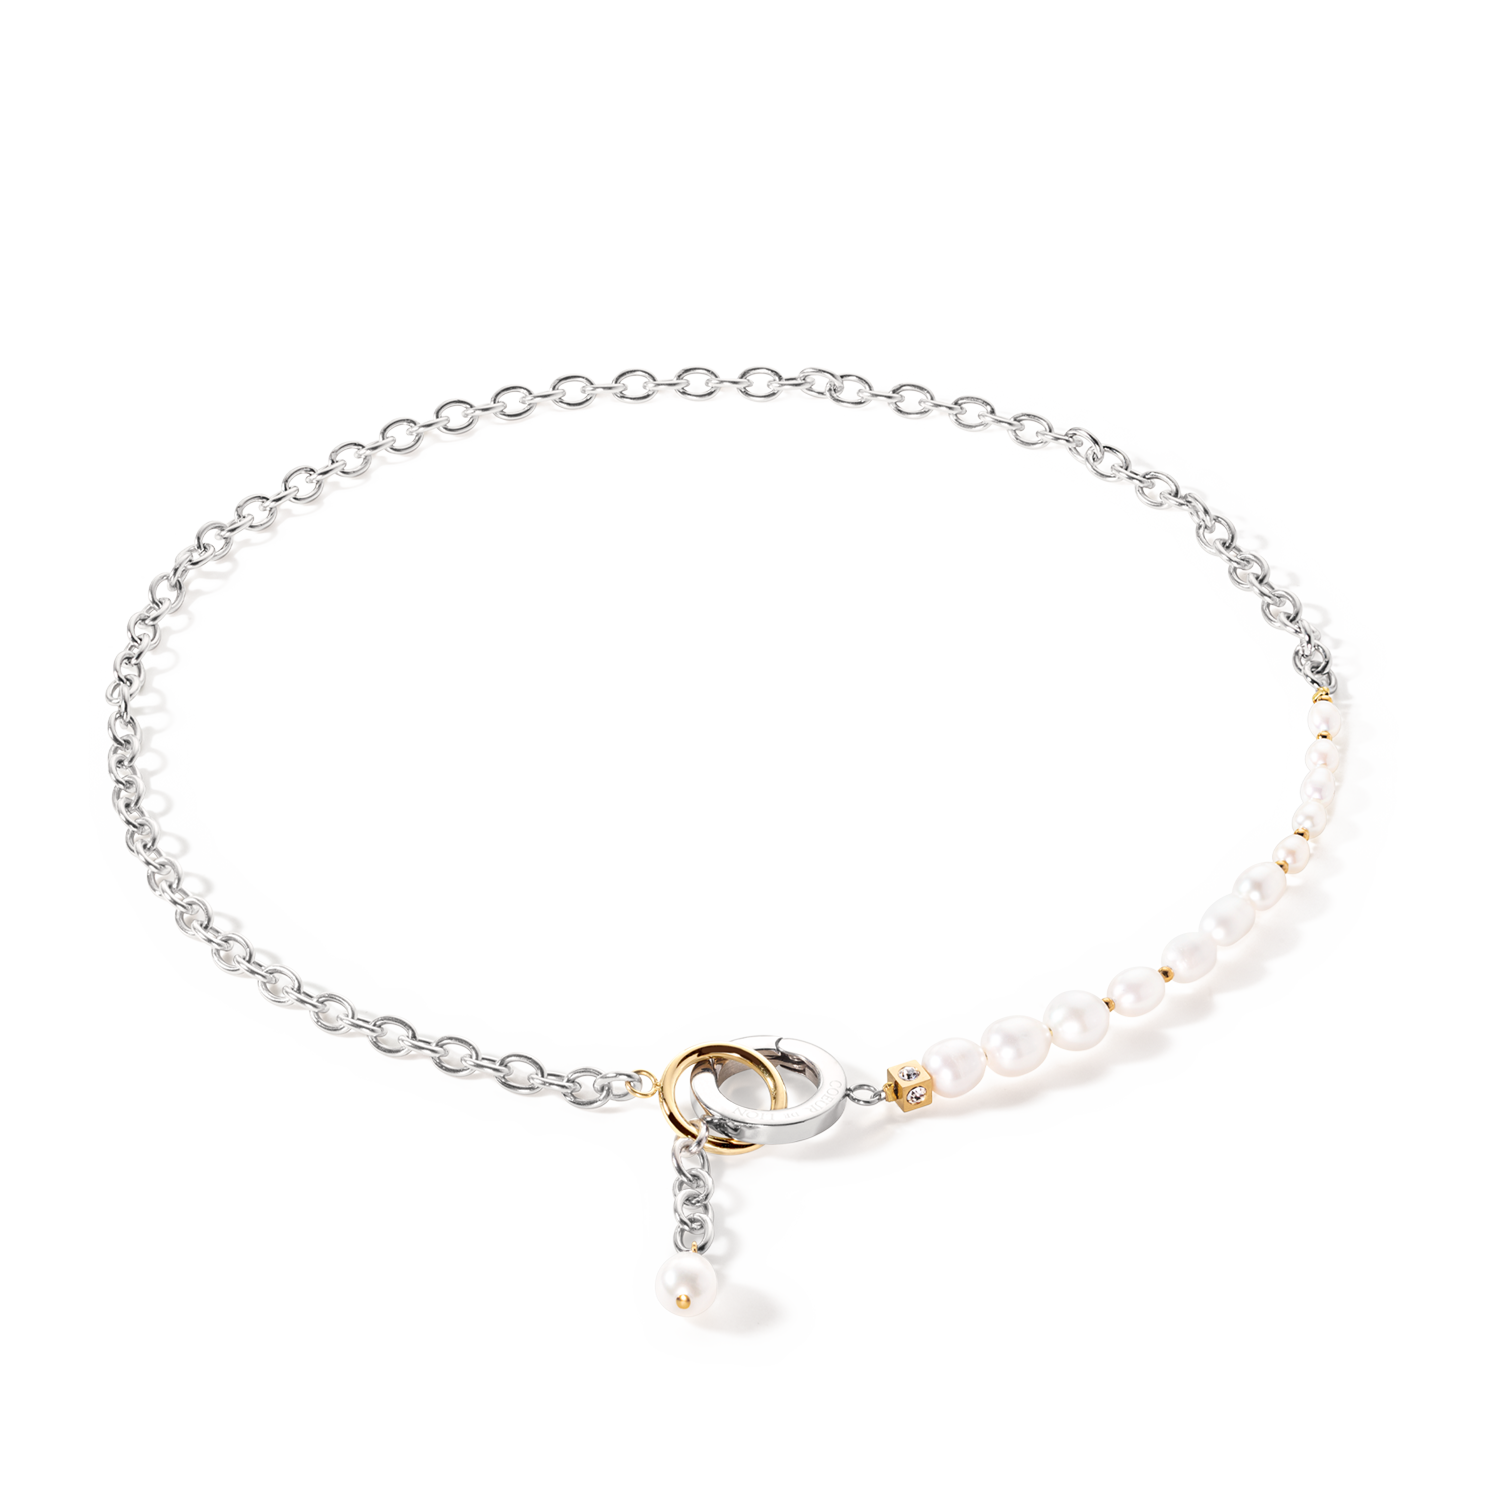 Collier Y & Perles d'eau Douce ovales avec O-ring bicolores